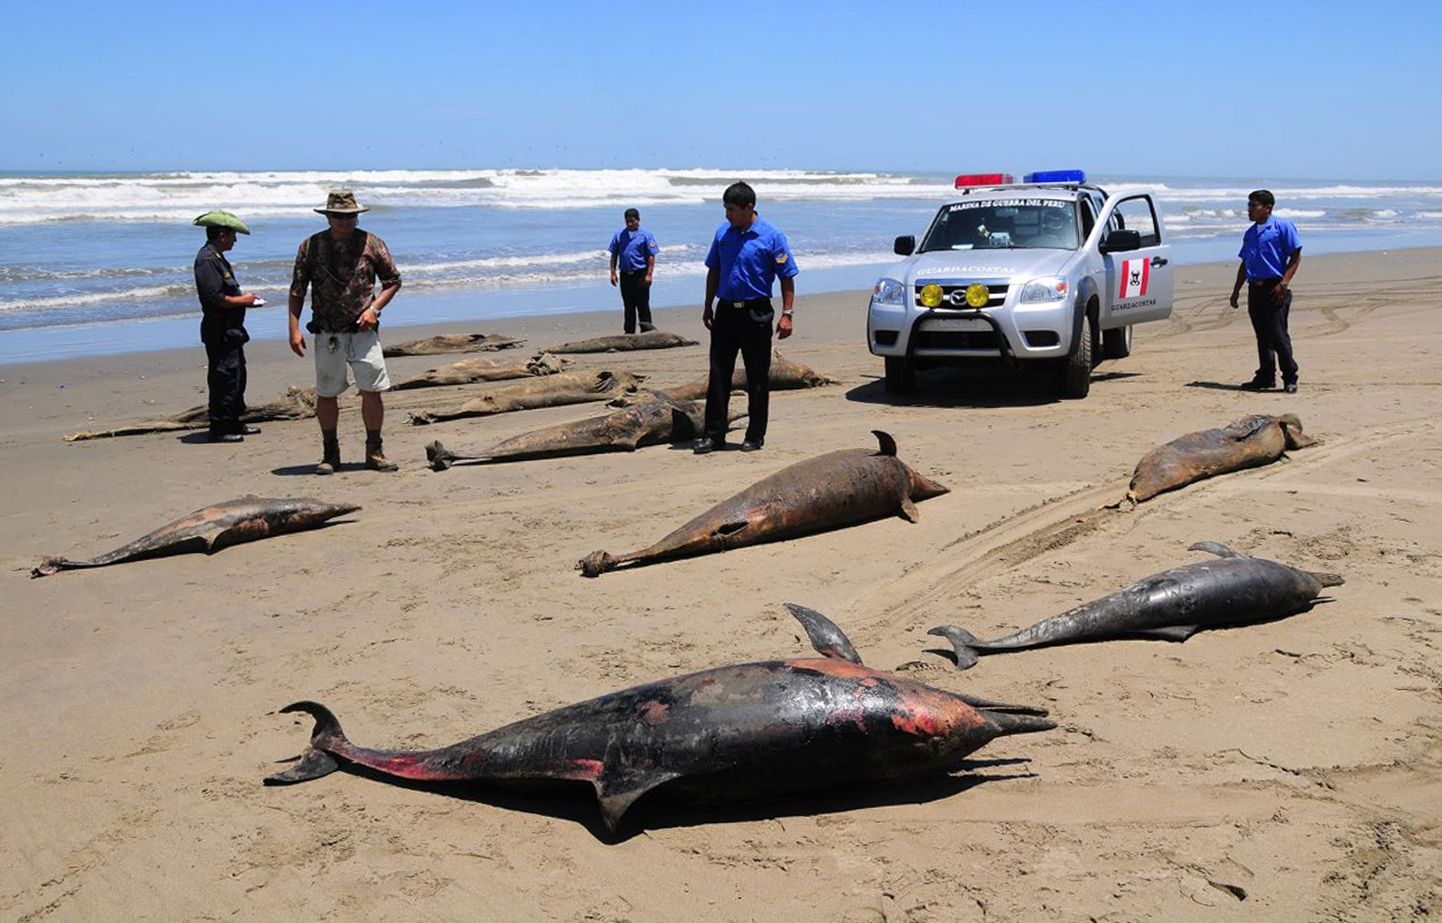 Peruu võimud uurivad jätkuvalt, mis põhjustas selle kuu algul sadade delfiinide surma. Pildil San José rand 6.aprillil.